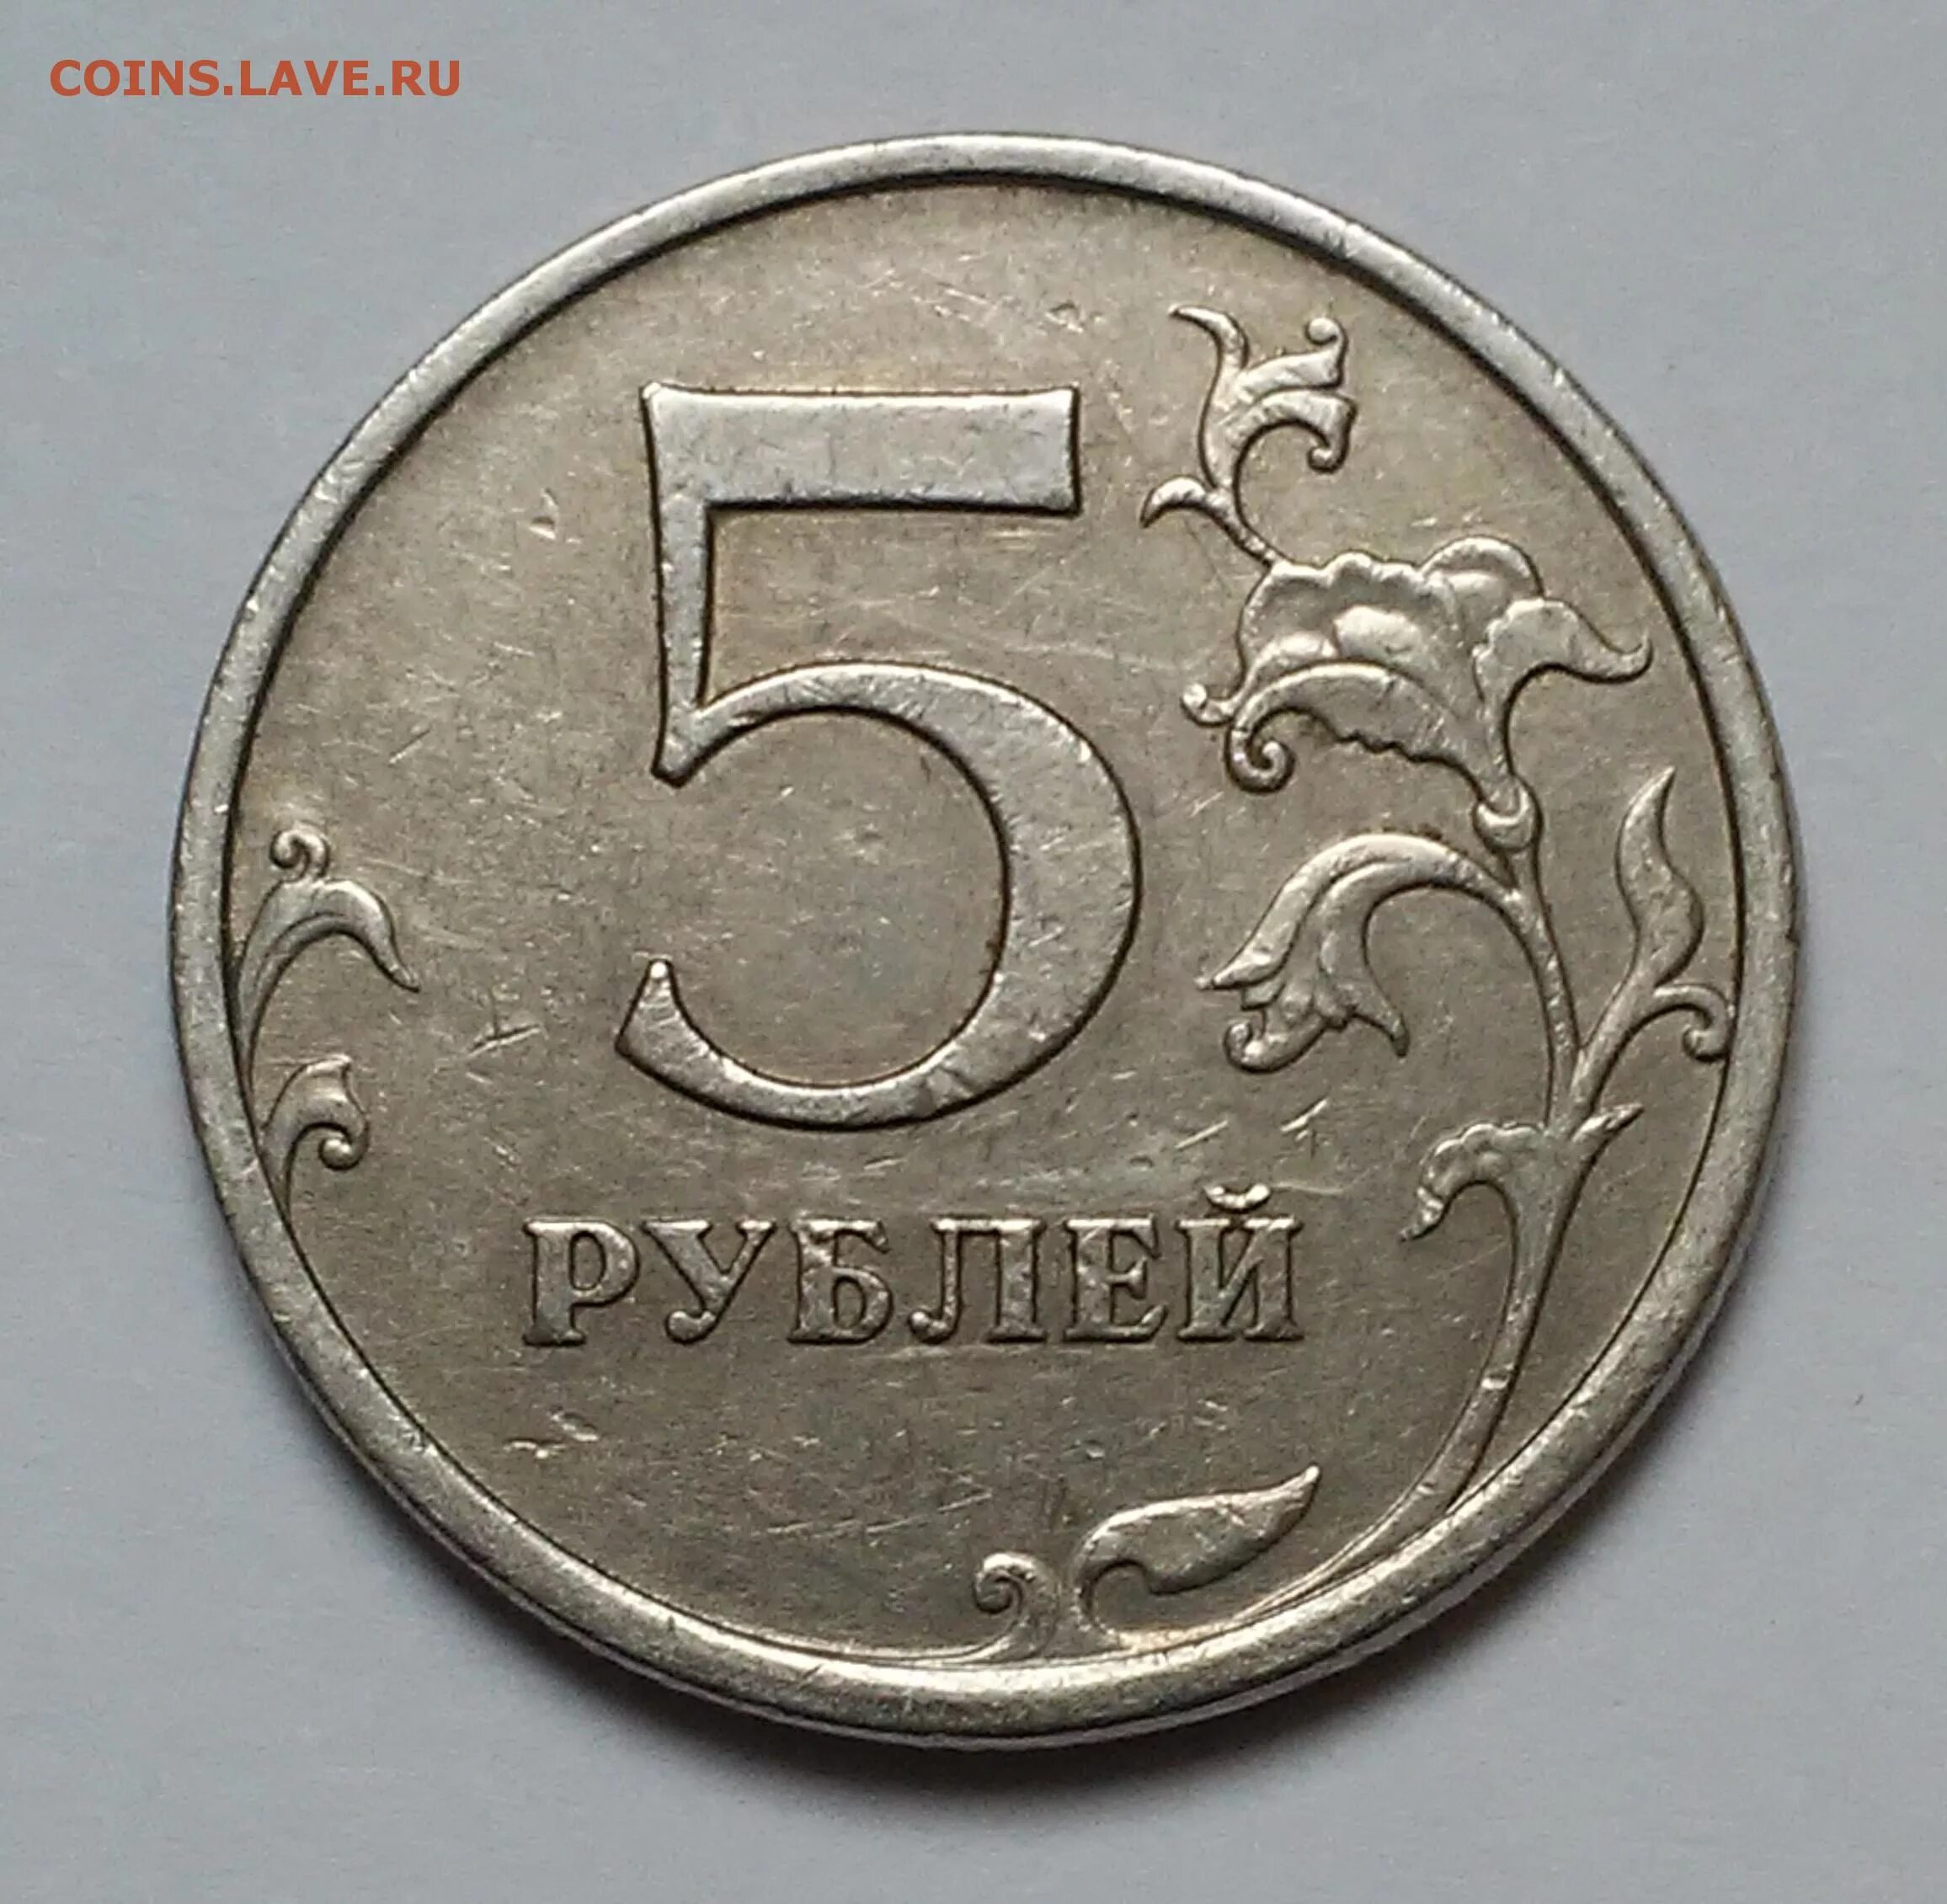 75 рублей 30. Монета 5 рублей 2003 года. Есть 5 рублей. Пять и десять рублей 1997 года.